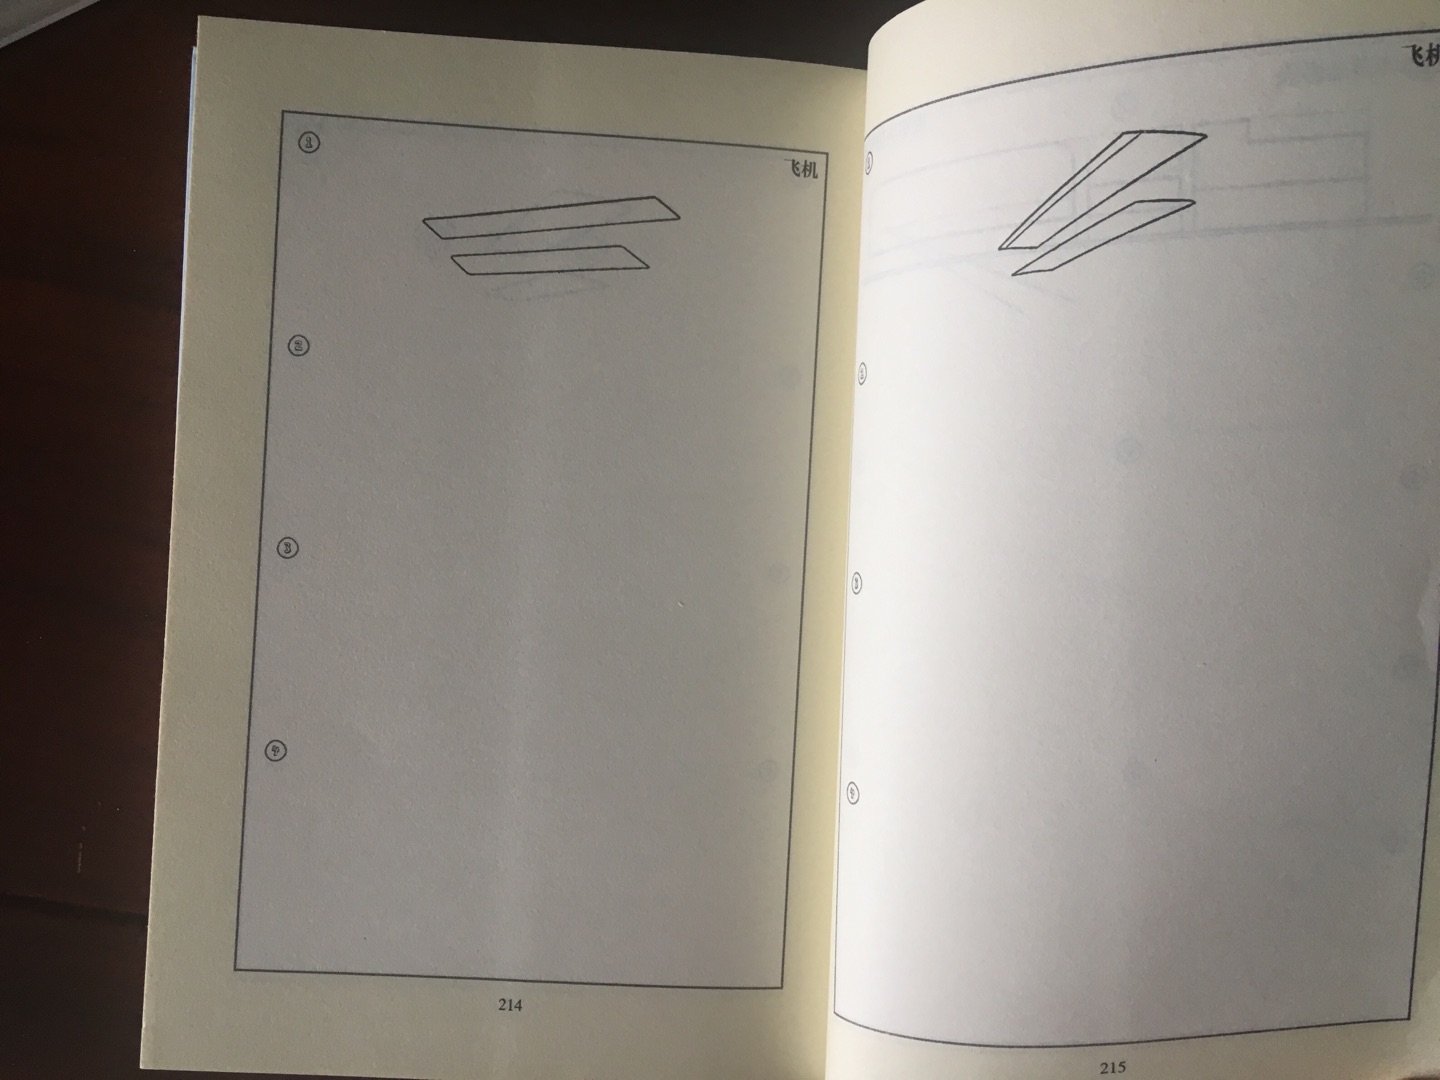 书是没有塑料薄膜包装的，1-87面都有图有文字讲解，88-215面就只有简单线条，几乎全页空白，内容挺少。